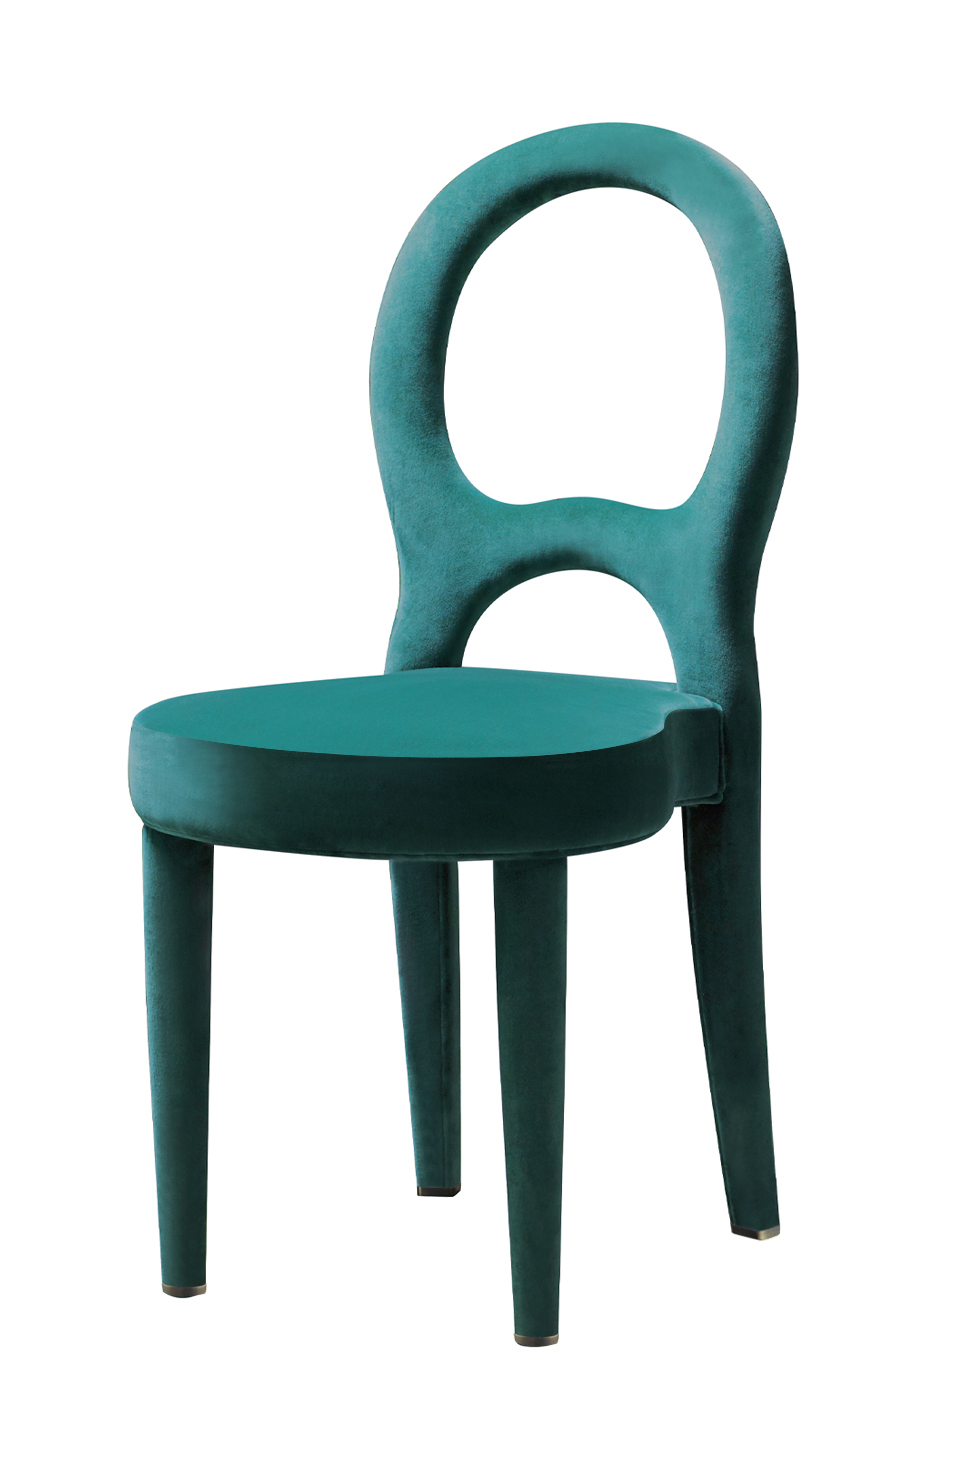 Bilou Bilou est une chaise de salle à manger, revêtue de velours, de lin ou de cuir nappa, disponible en différentes couleurs et dans les versions : standard, chaise de bar et kids, modèle pour enfants. Bilou Bilou est la plus emblématique des chaises du 